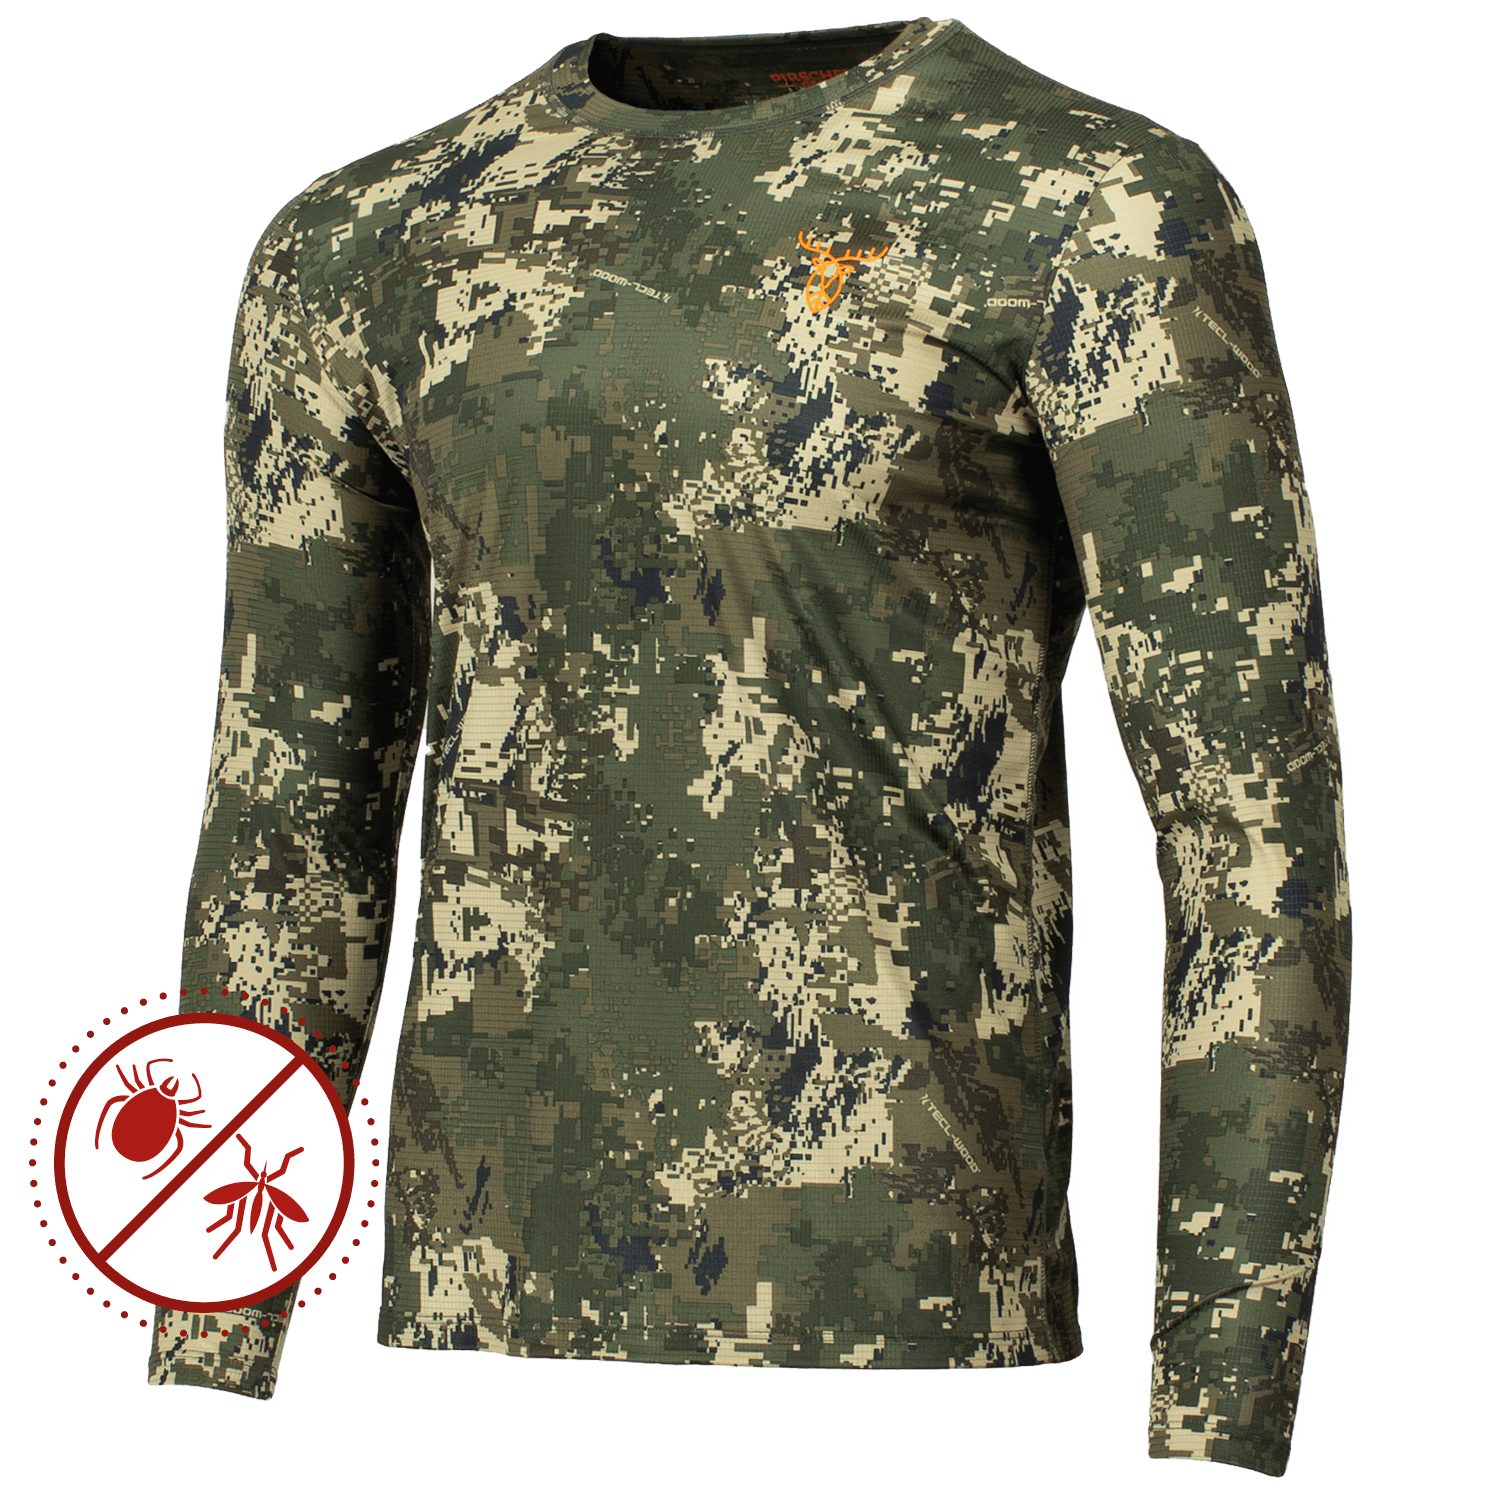  Pirscher Gear Ultralicht Tanatex LS Shirt (Optimax) - Camouflageshirts